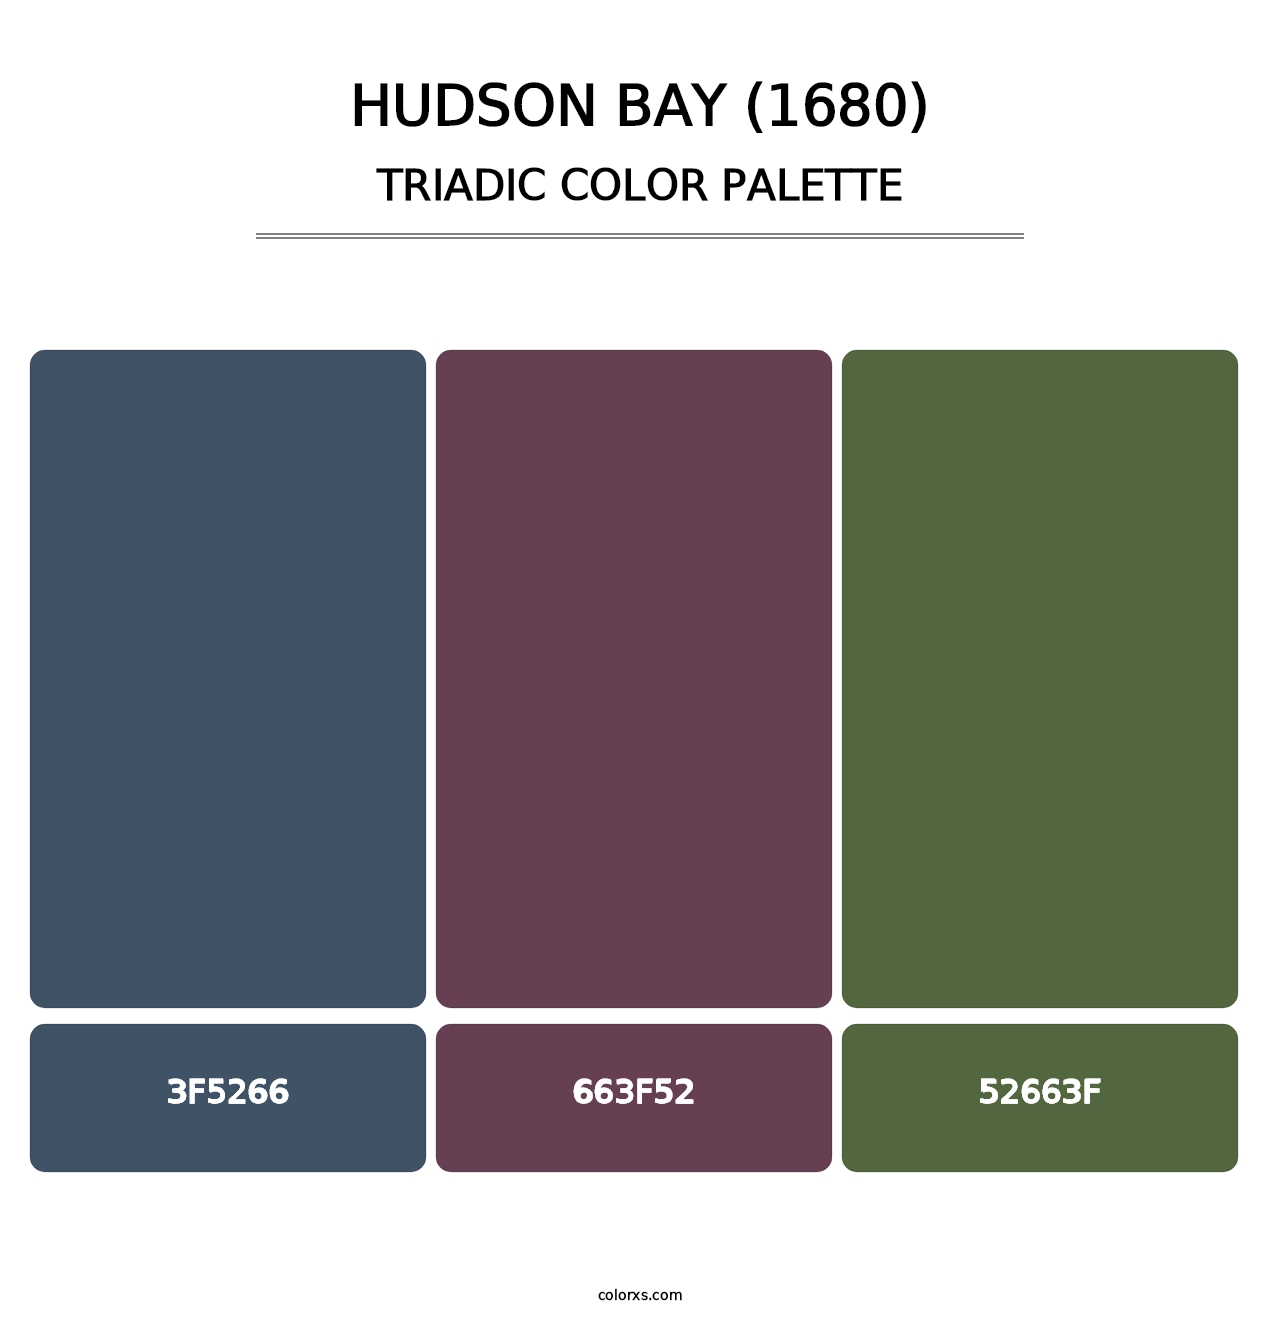 Hudson Bay (1680) - Triadic Color Palette